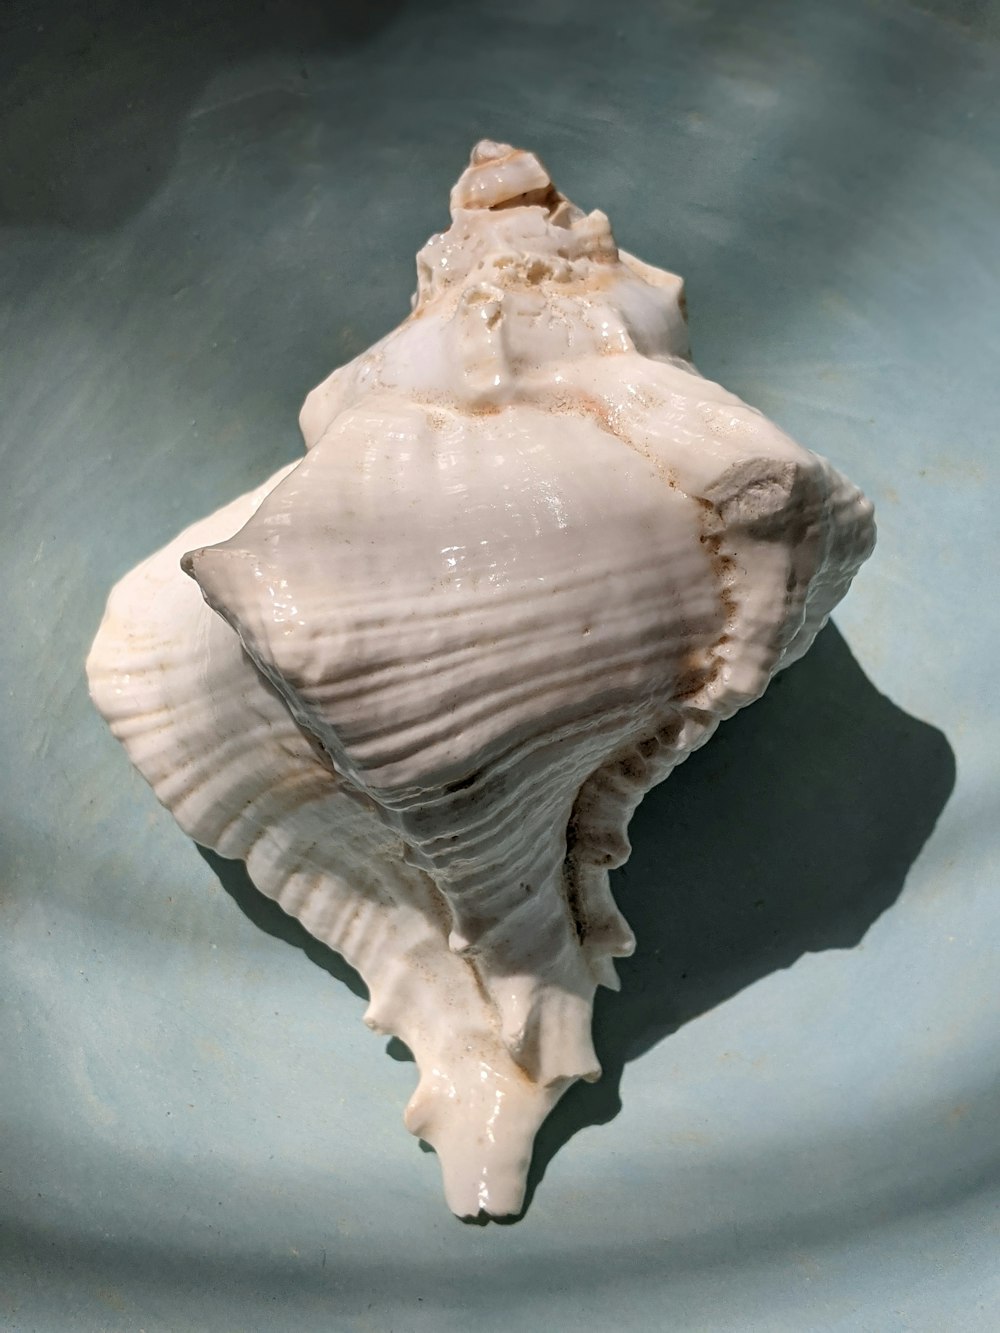 white seashell on black textile